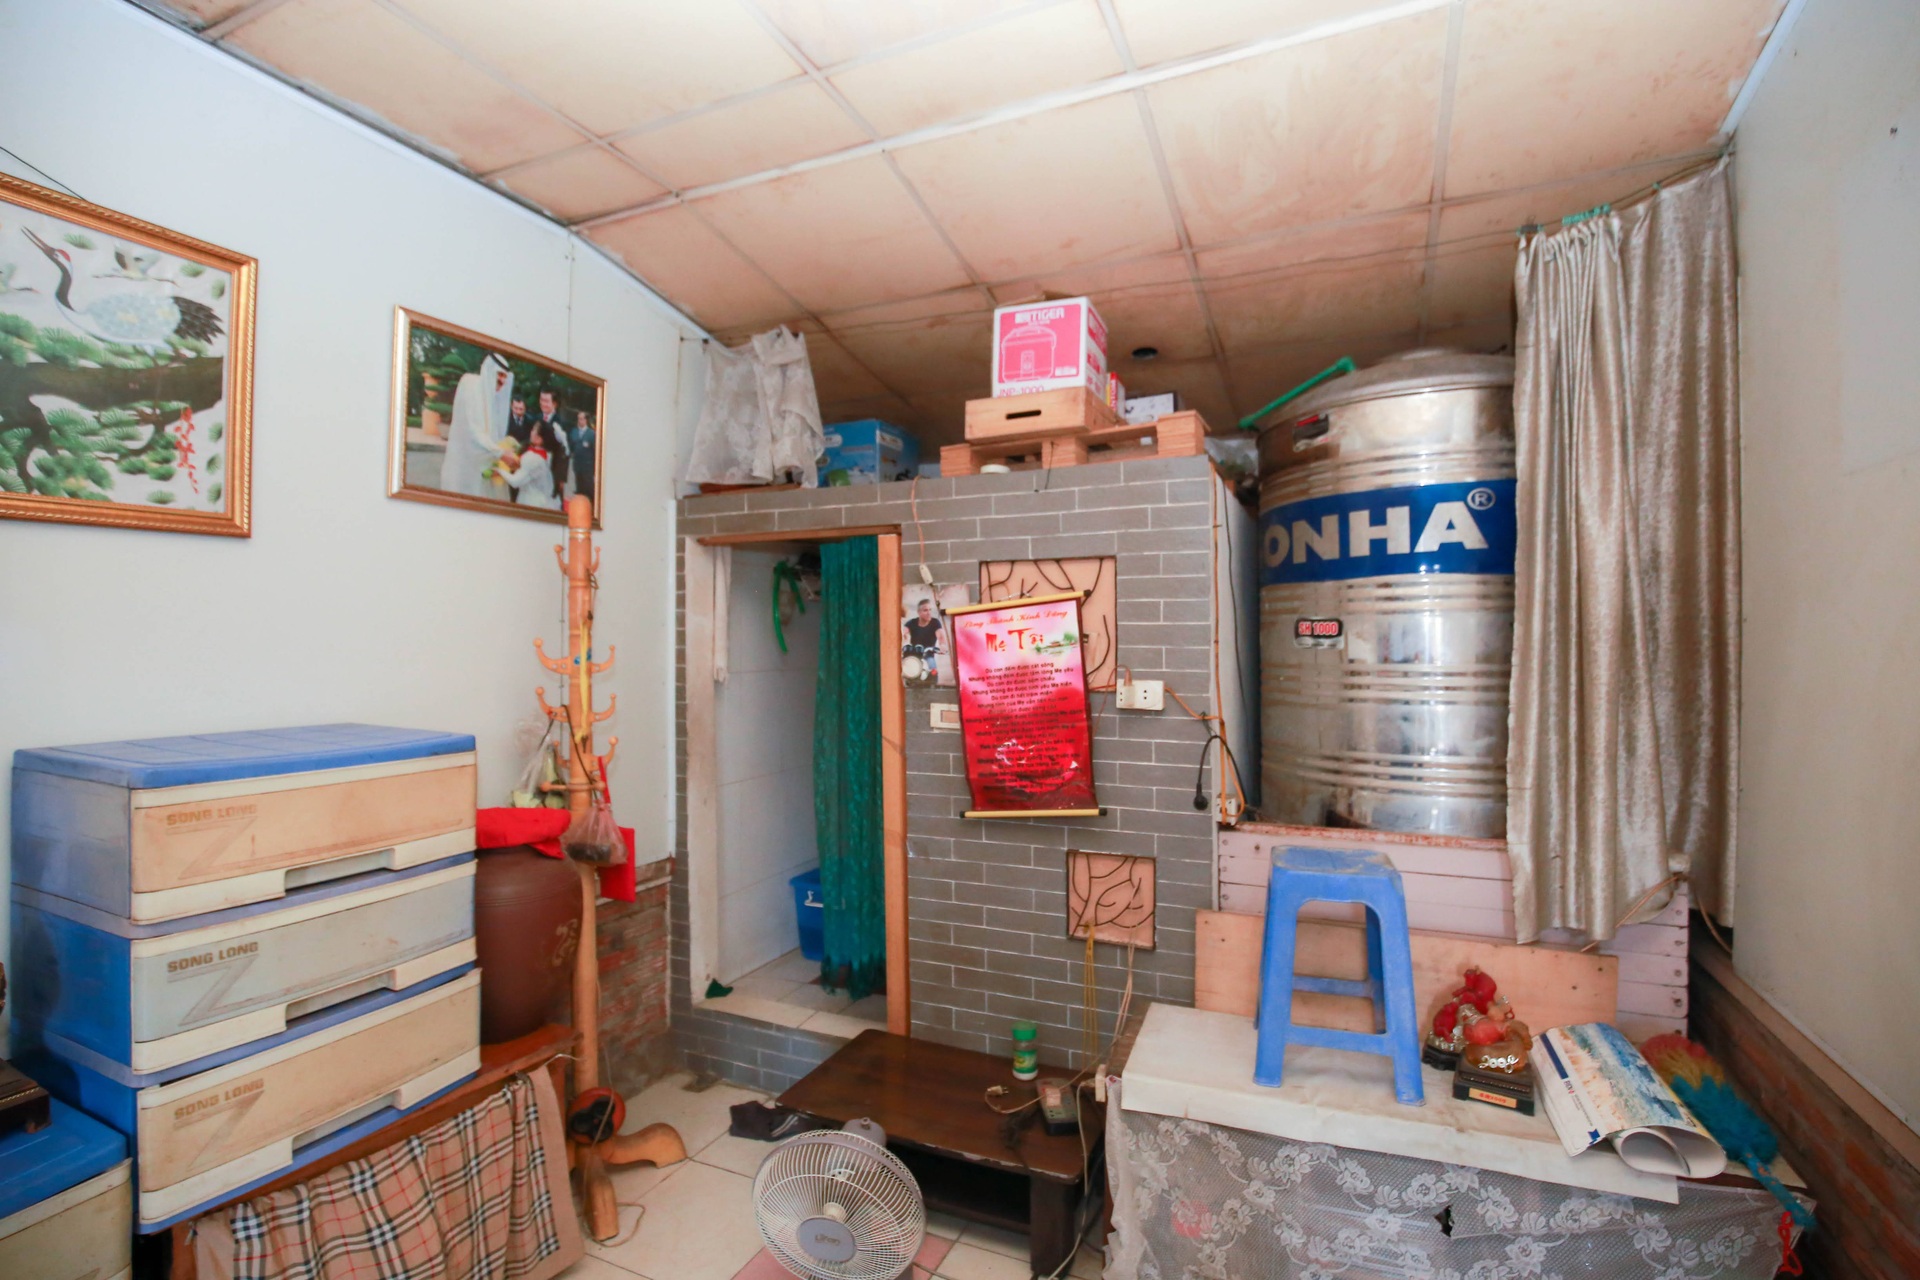 Một đêm trong nhà đất vàng 16m2 ở Hà Nội: 70 người chung một nhà vệ sinh - 3